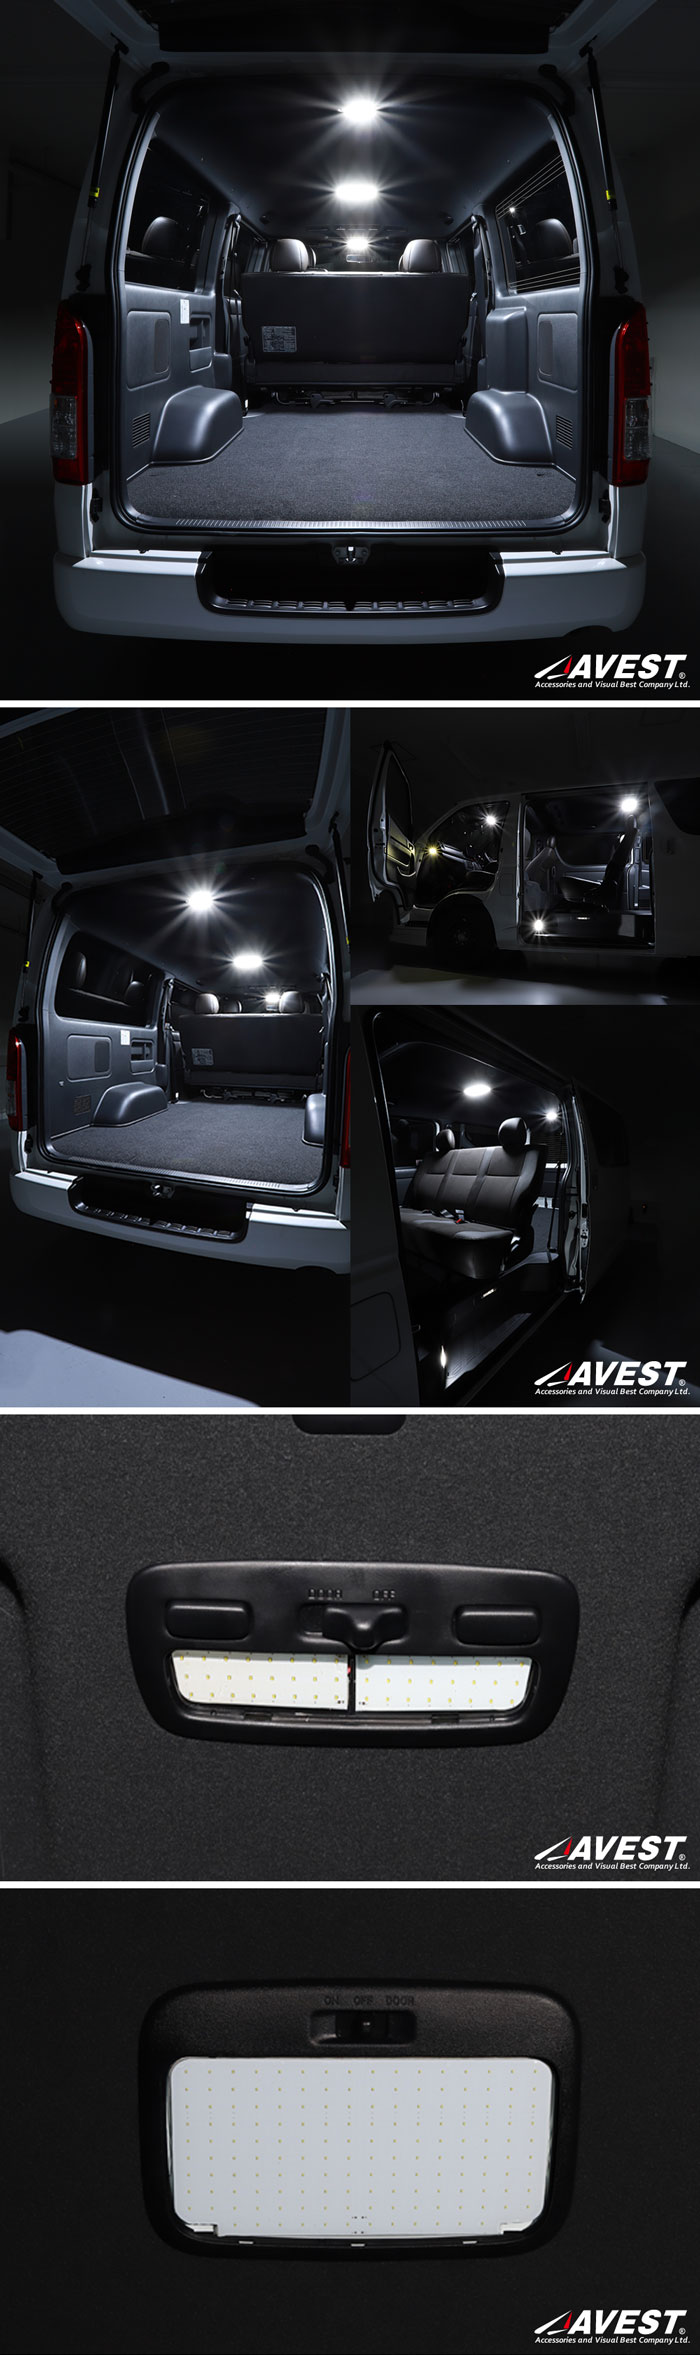 LED ルームランプ】AVEST ハイエース 200系 4型S-GL LEDルームランプセット COBタイプ- AutoMall オートモール  カーパーツカタログ